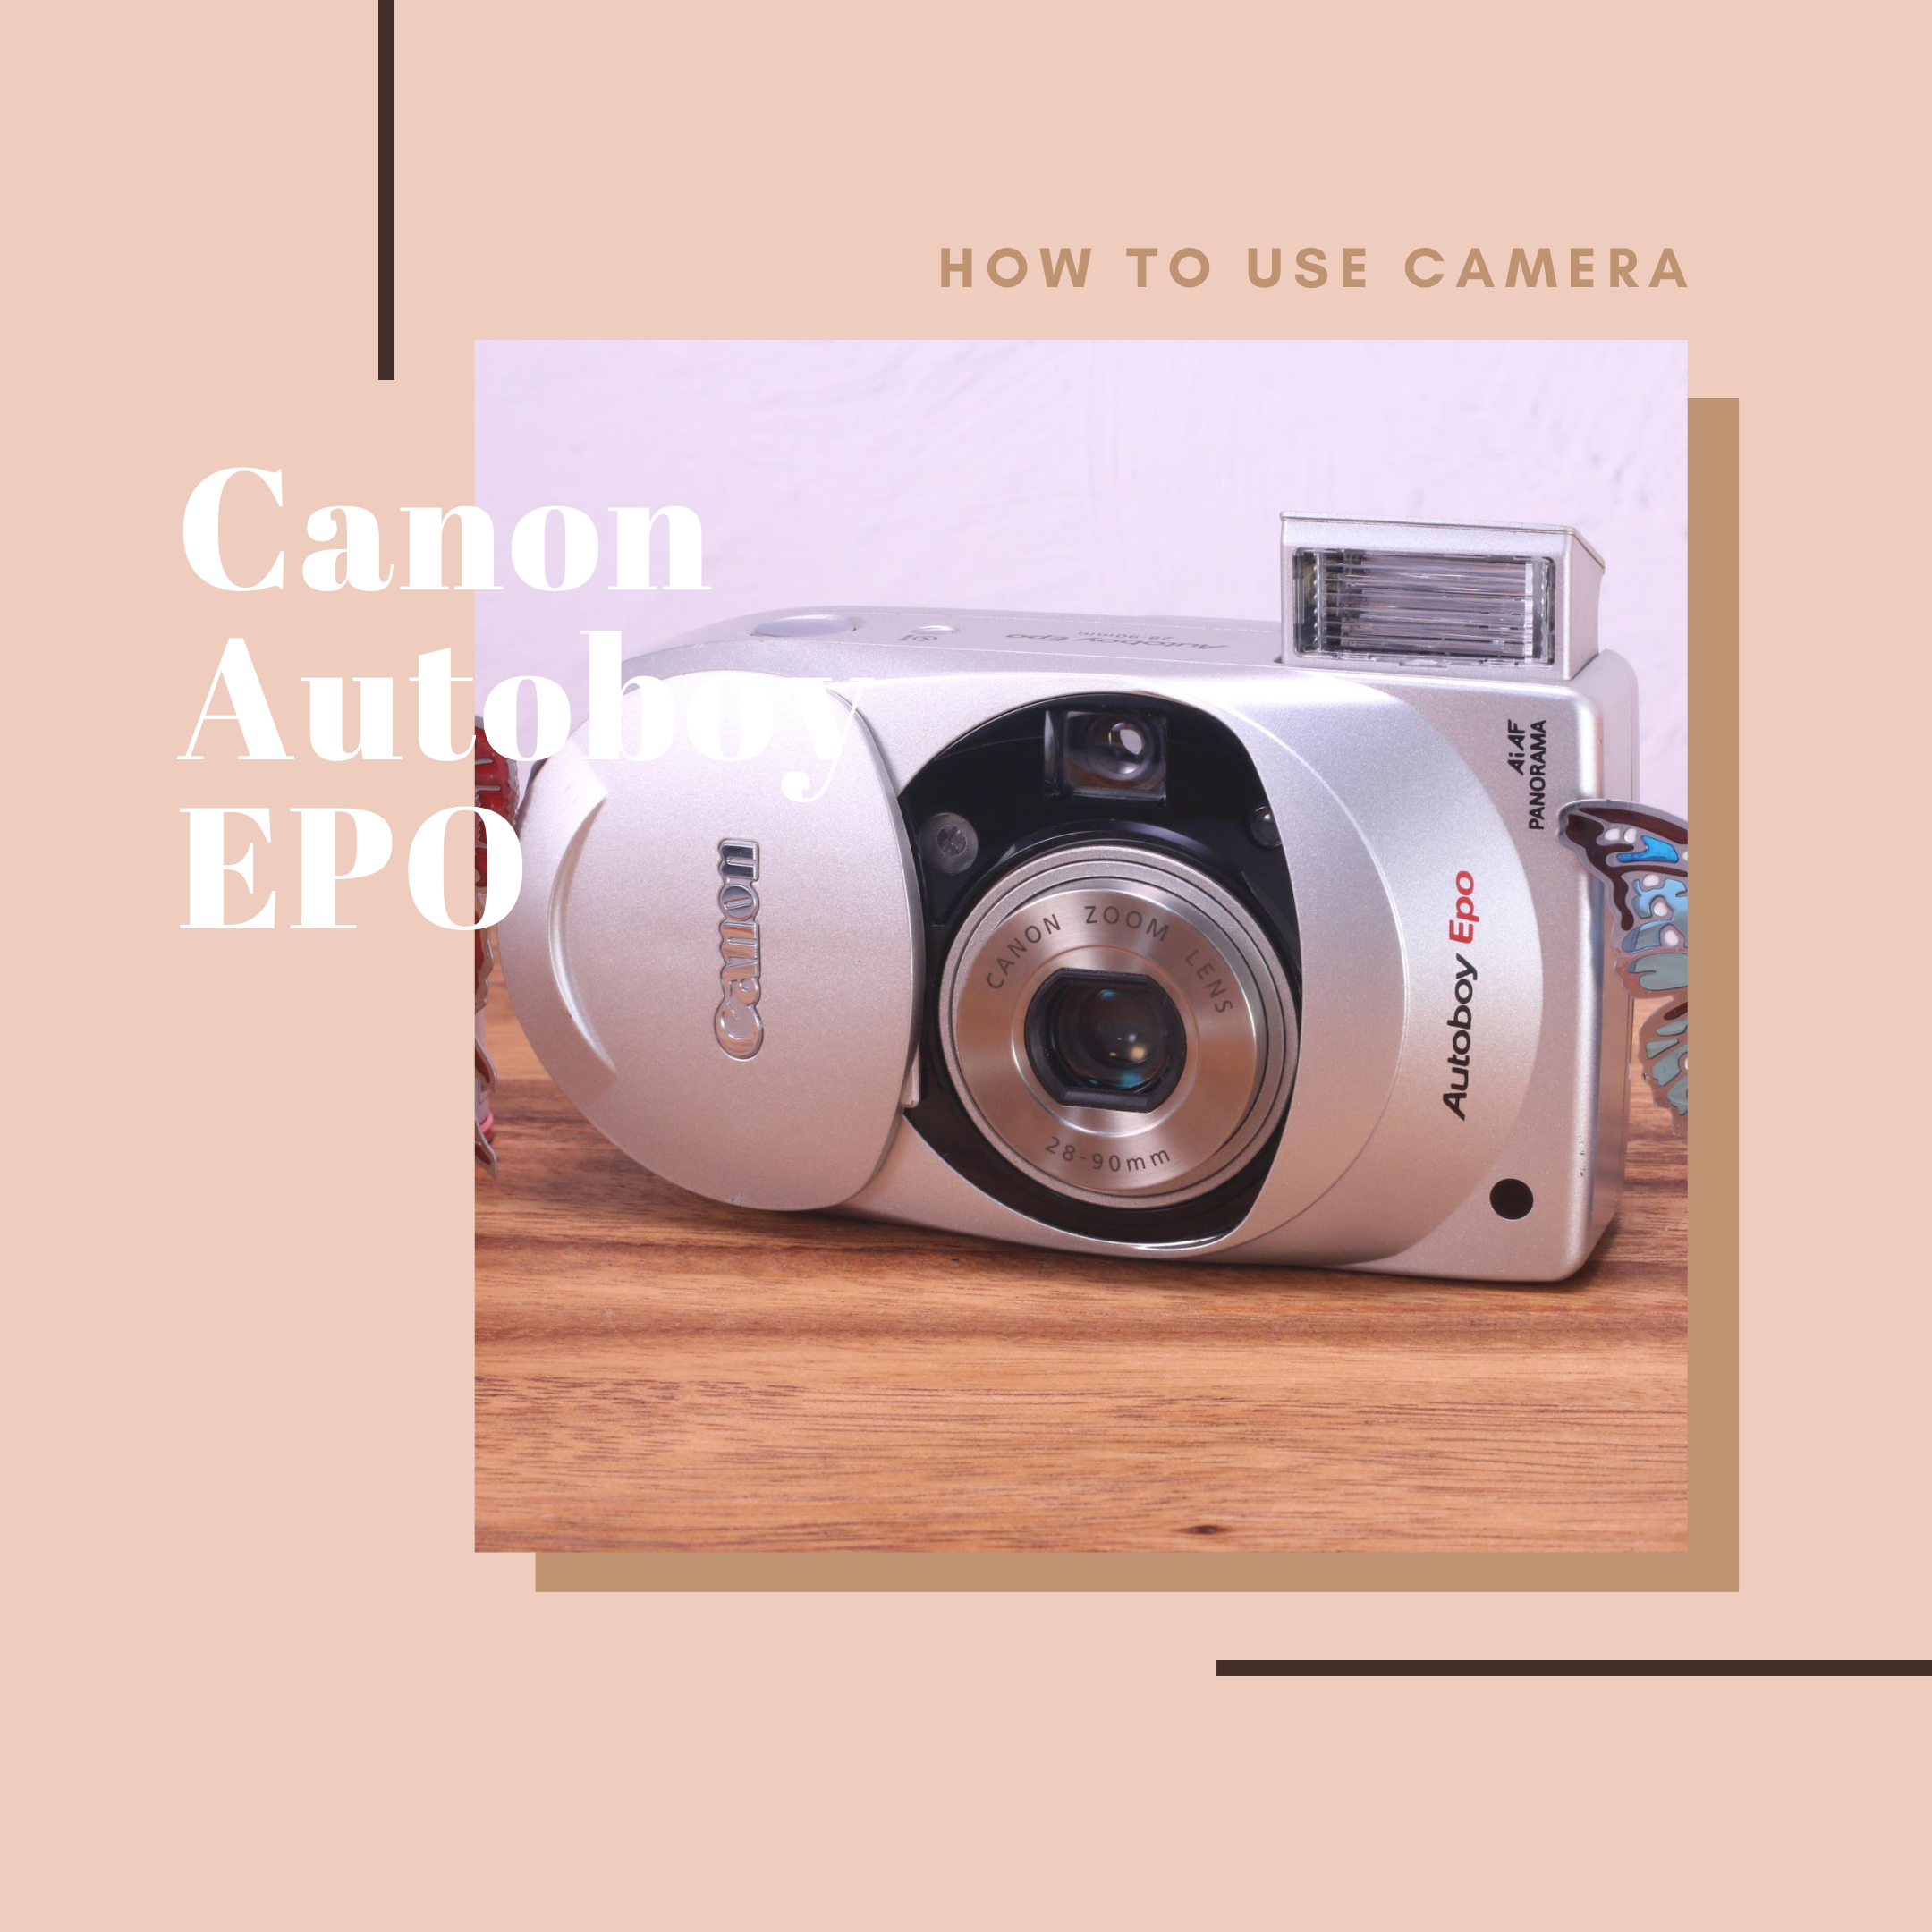 Canon Autoboy EPO の使い方 | Totte Me Camera